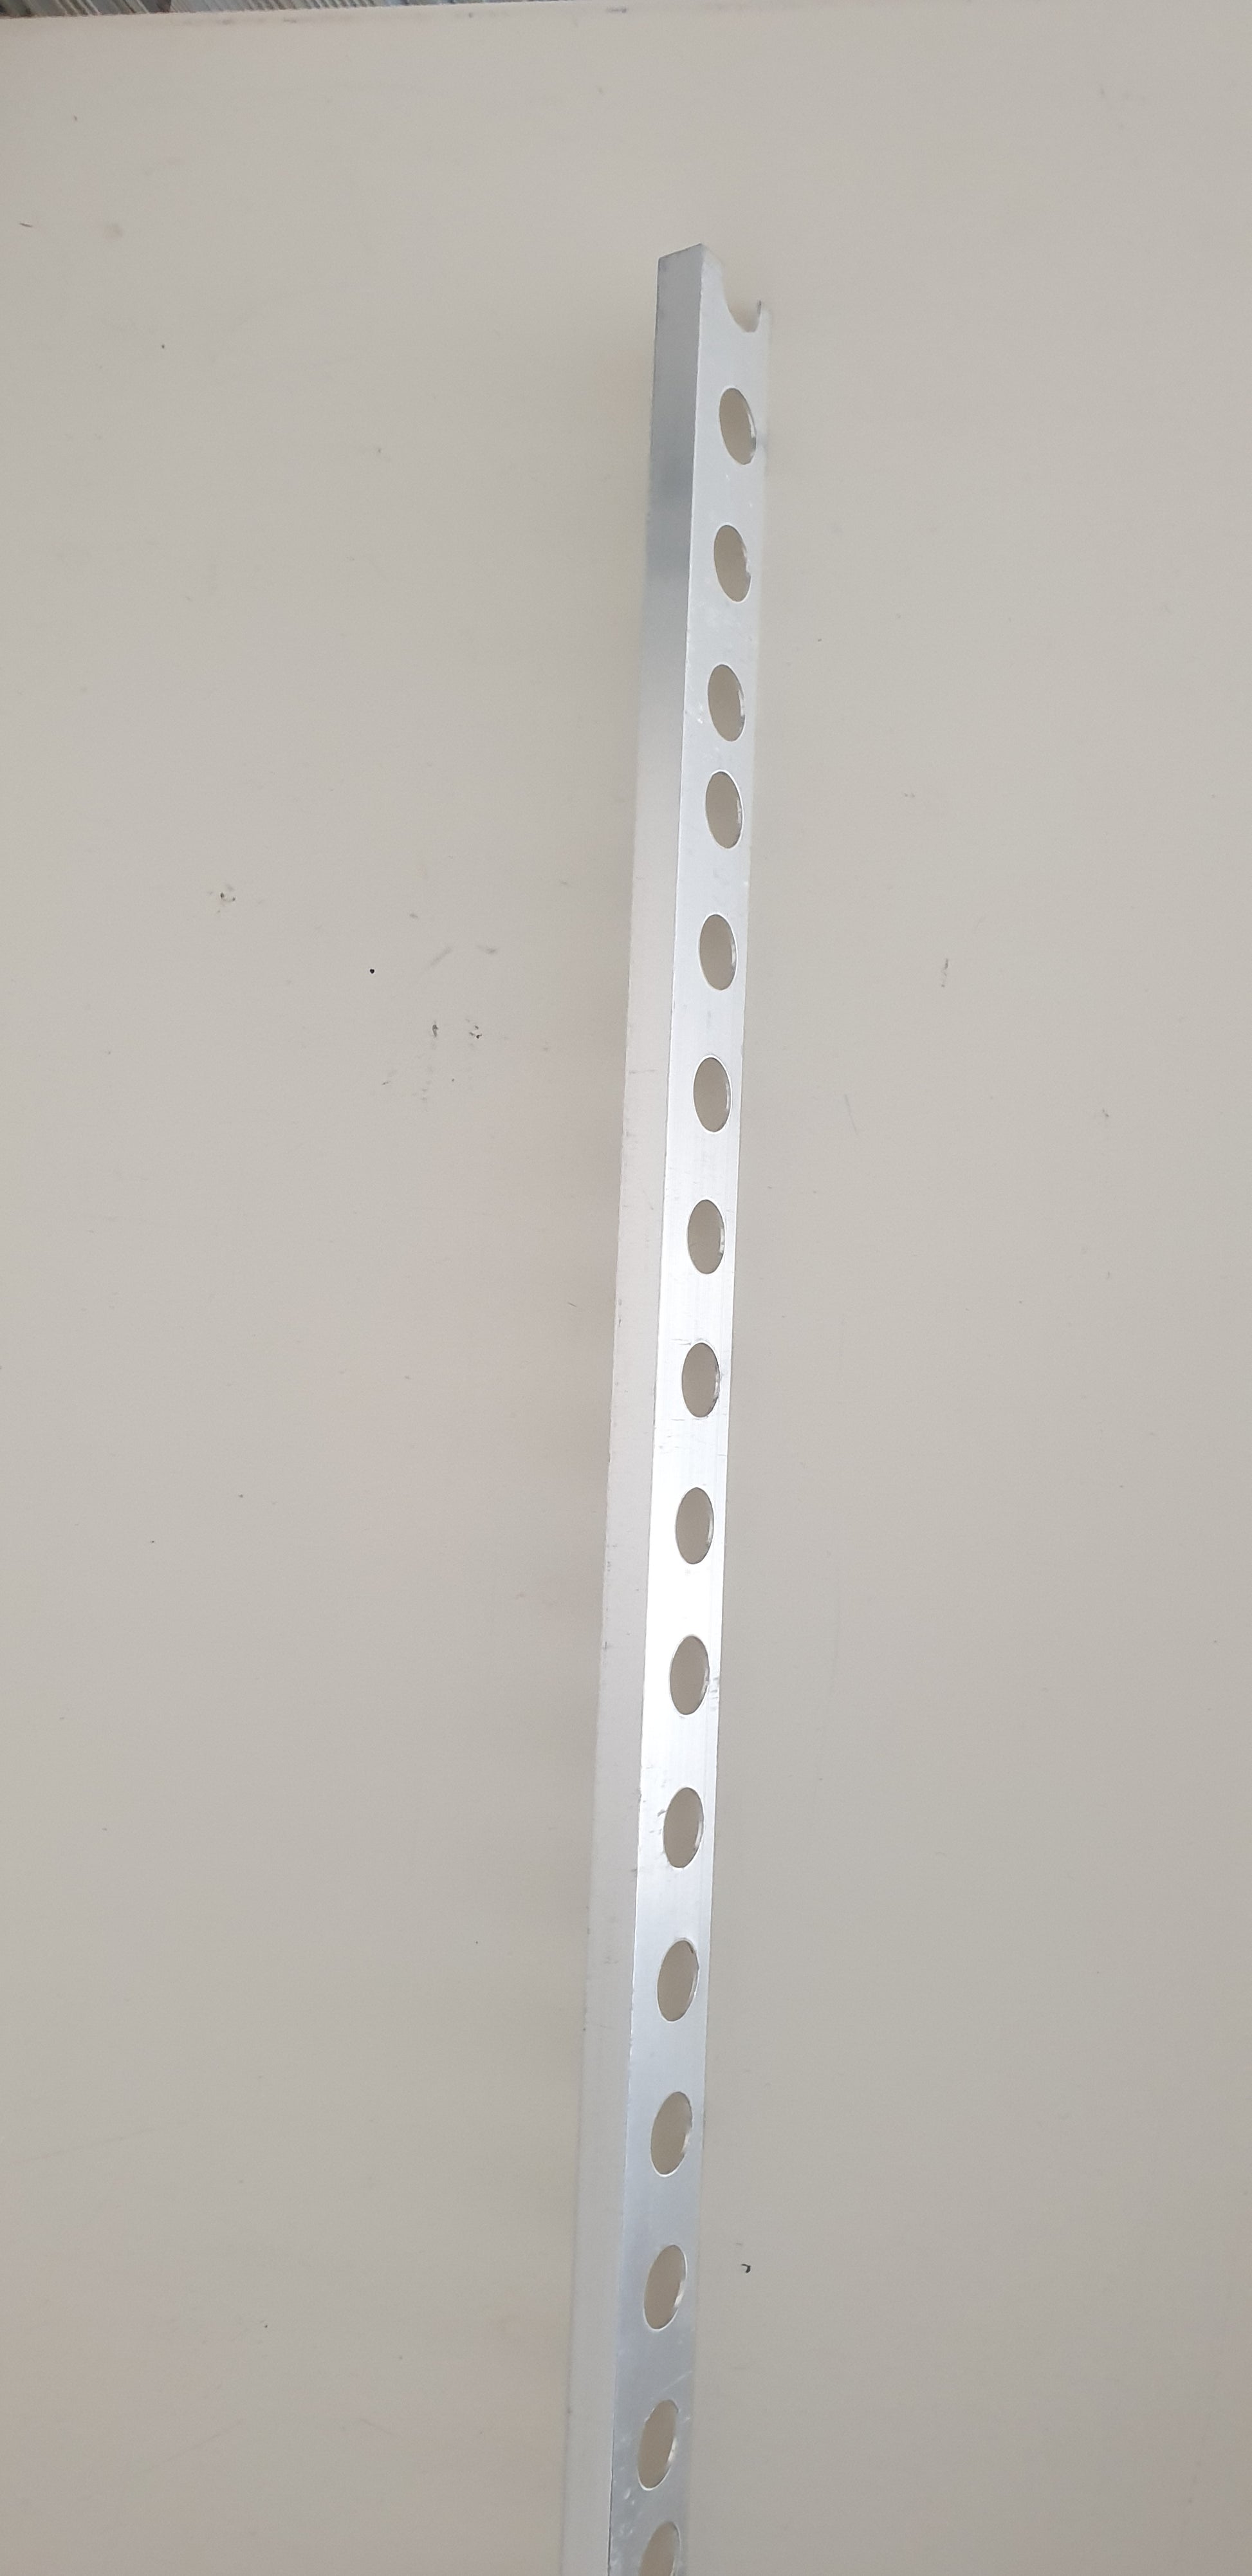 Baguette d'angle en aluminium anthracite 3.8 x 3.8 x 220 cm